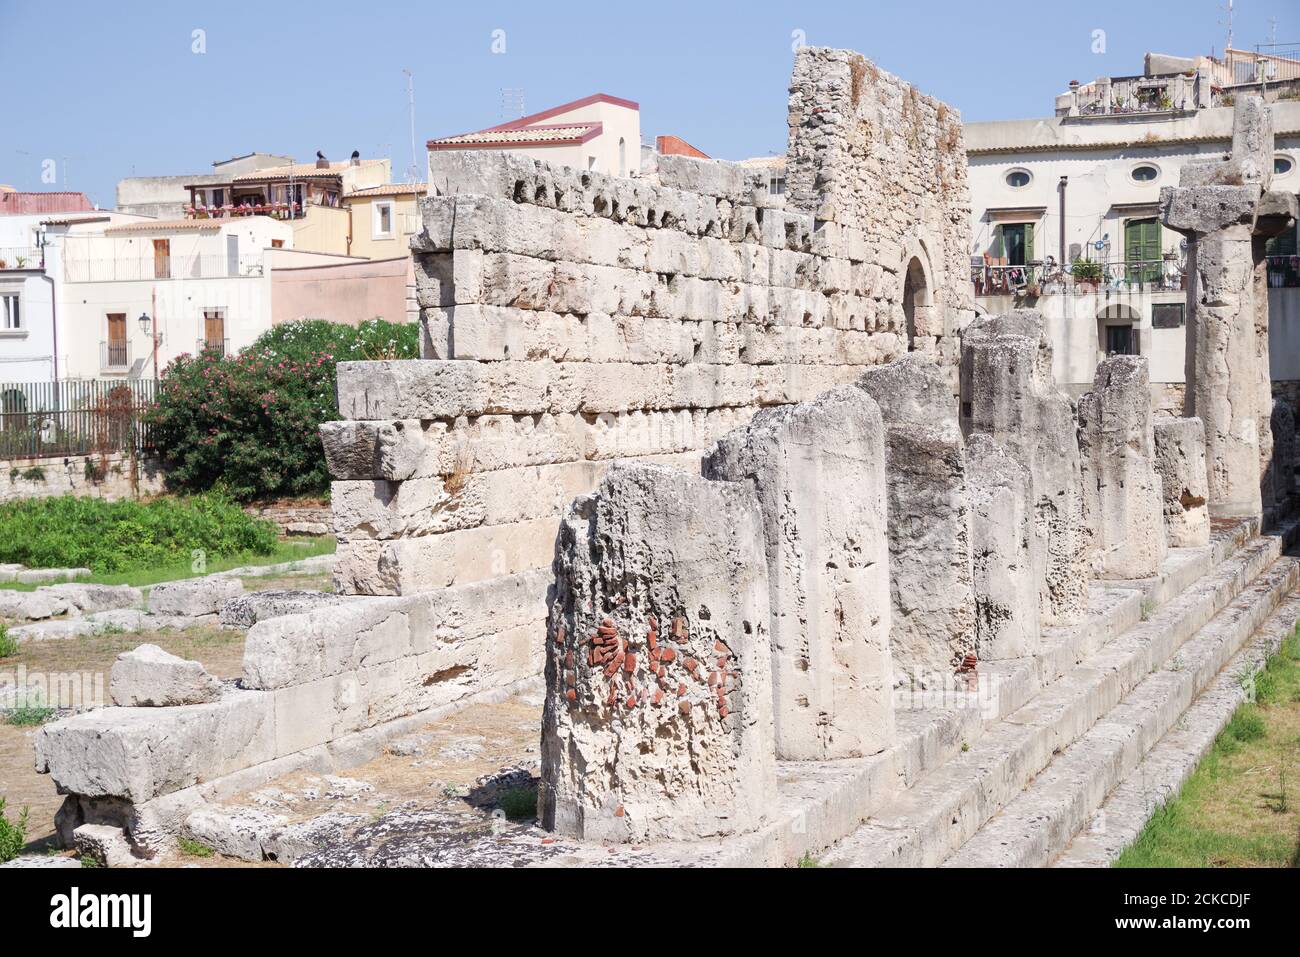 Ruinen des Tempels von Apollo, eines der wichtigsten antiken griechischen Denkmäler in Ortygia - Sizilien, Italien Stockfoto